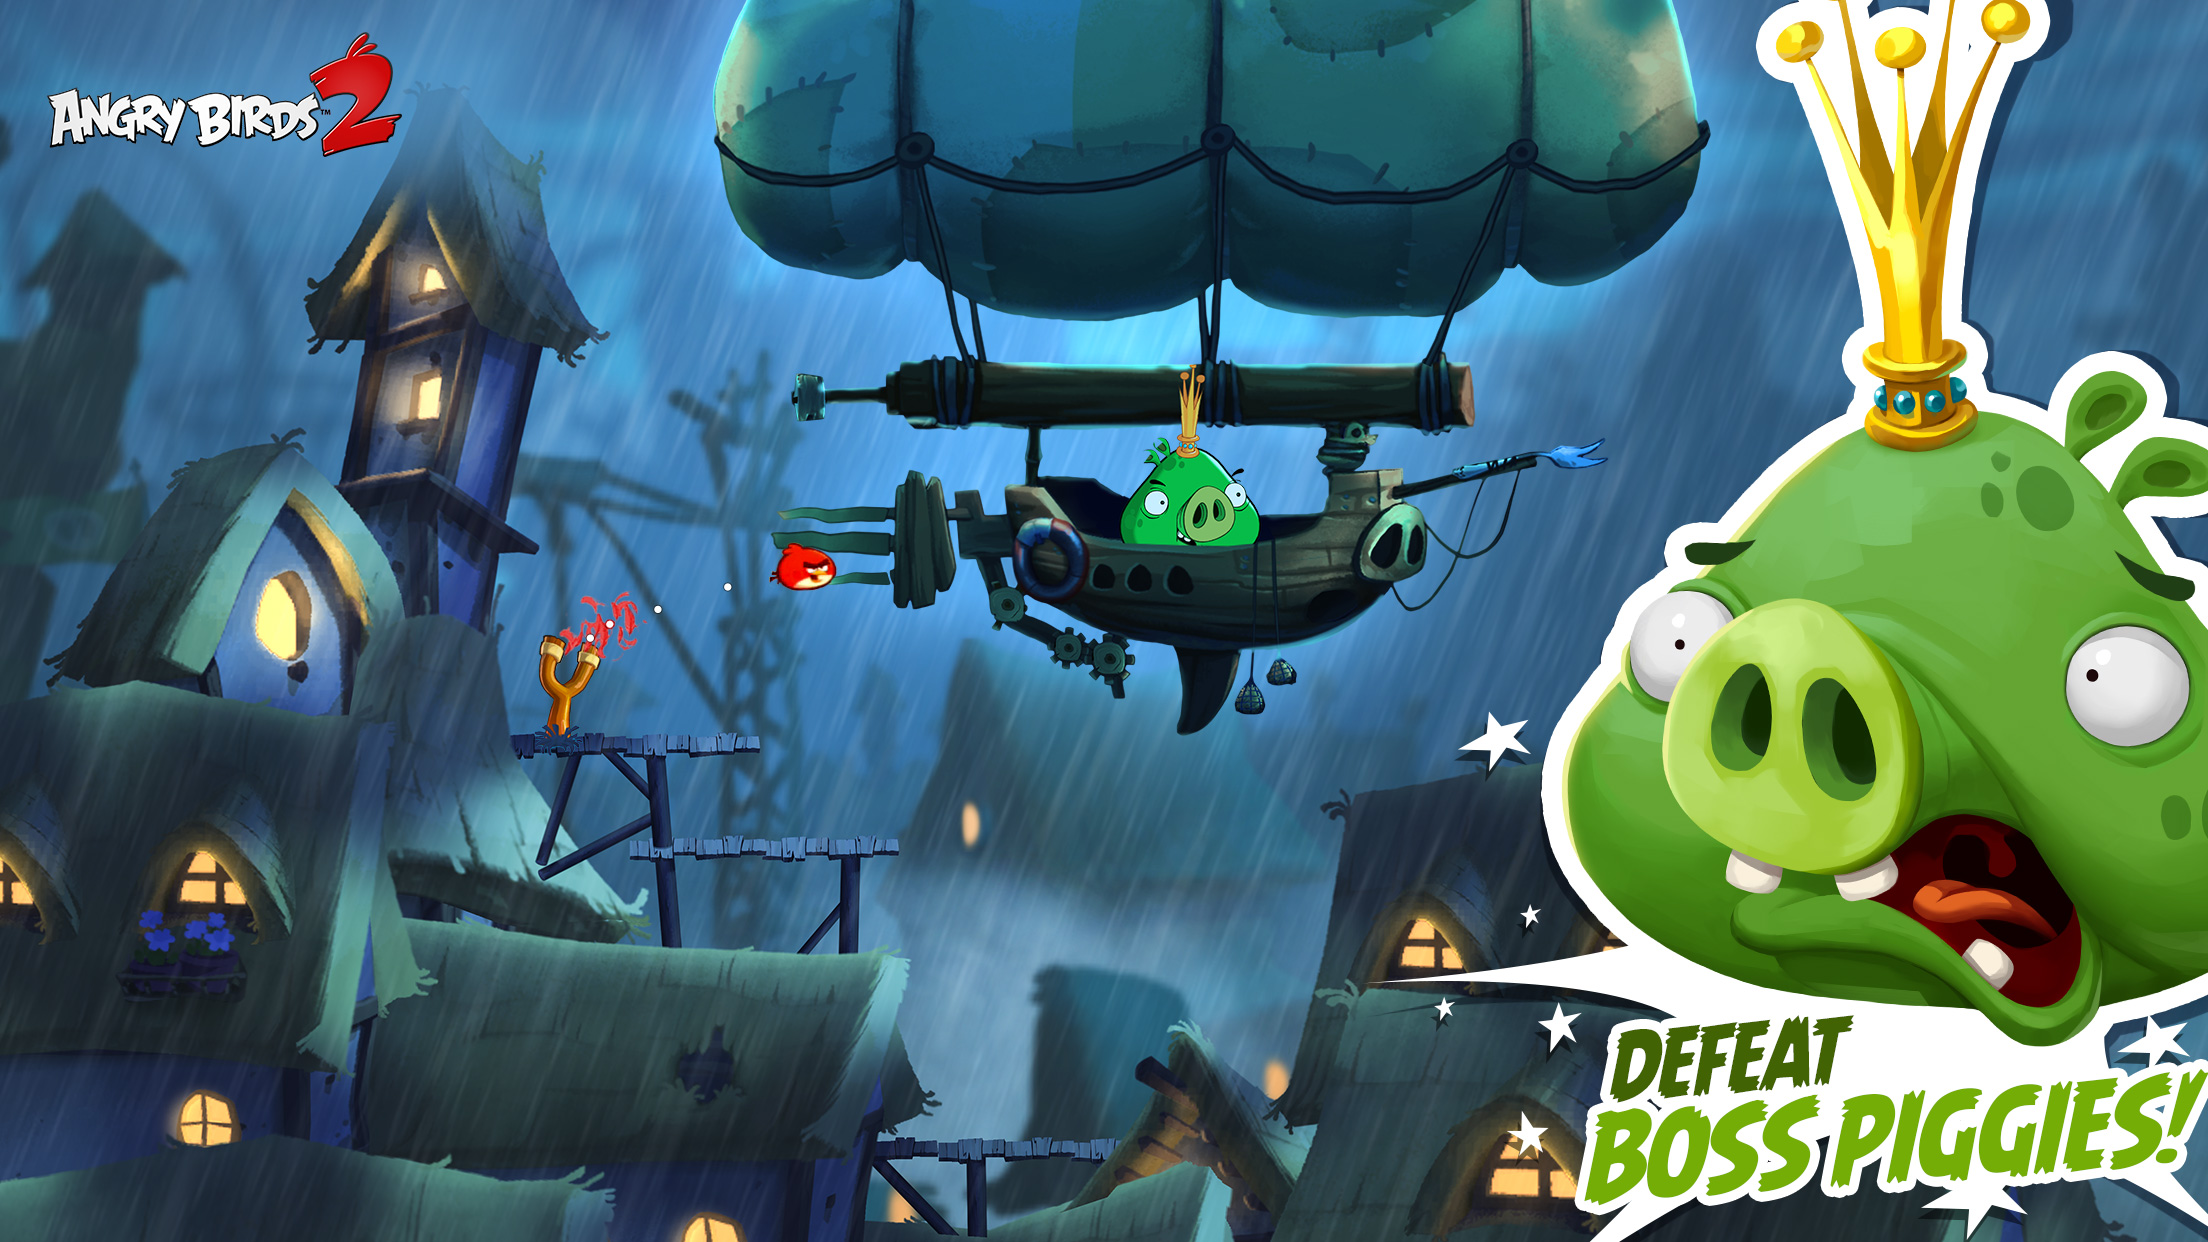 Angry Birds 2 screenshot_defeat boss piggies